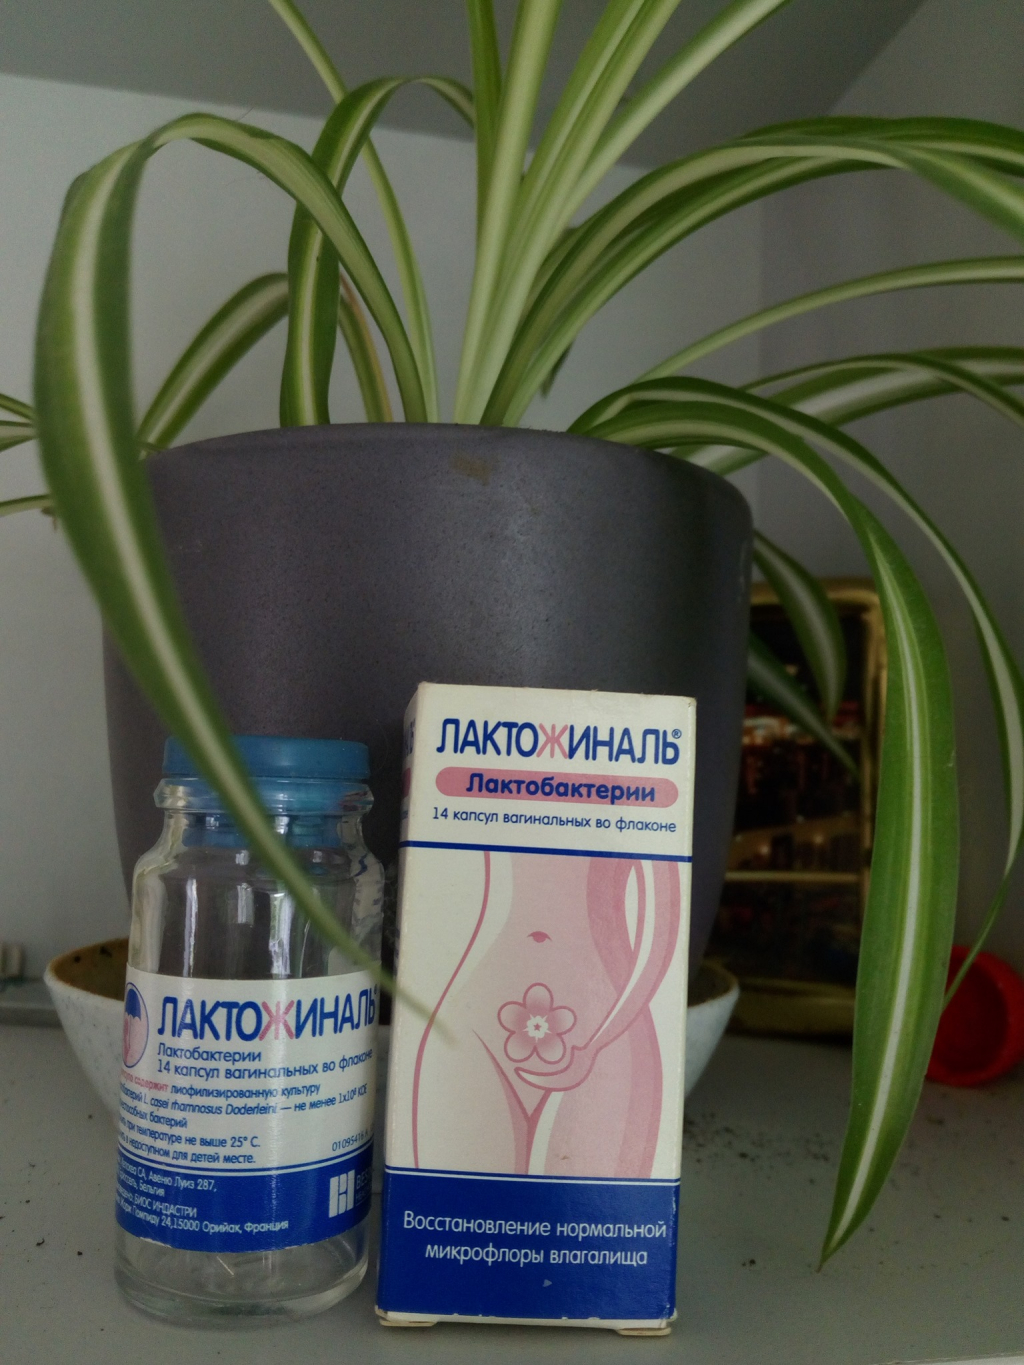 Лактожиналь - Современный пробиотик на смену свечам